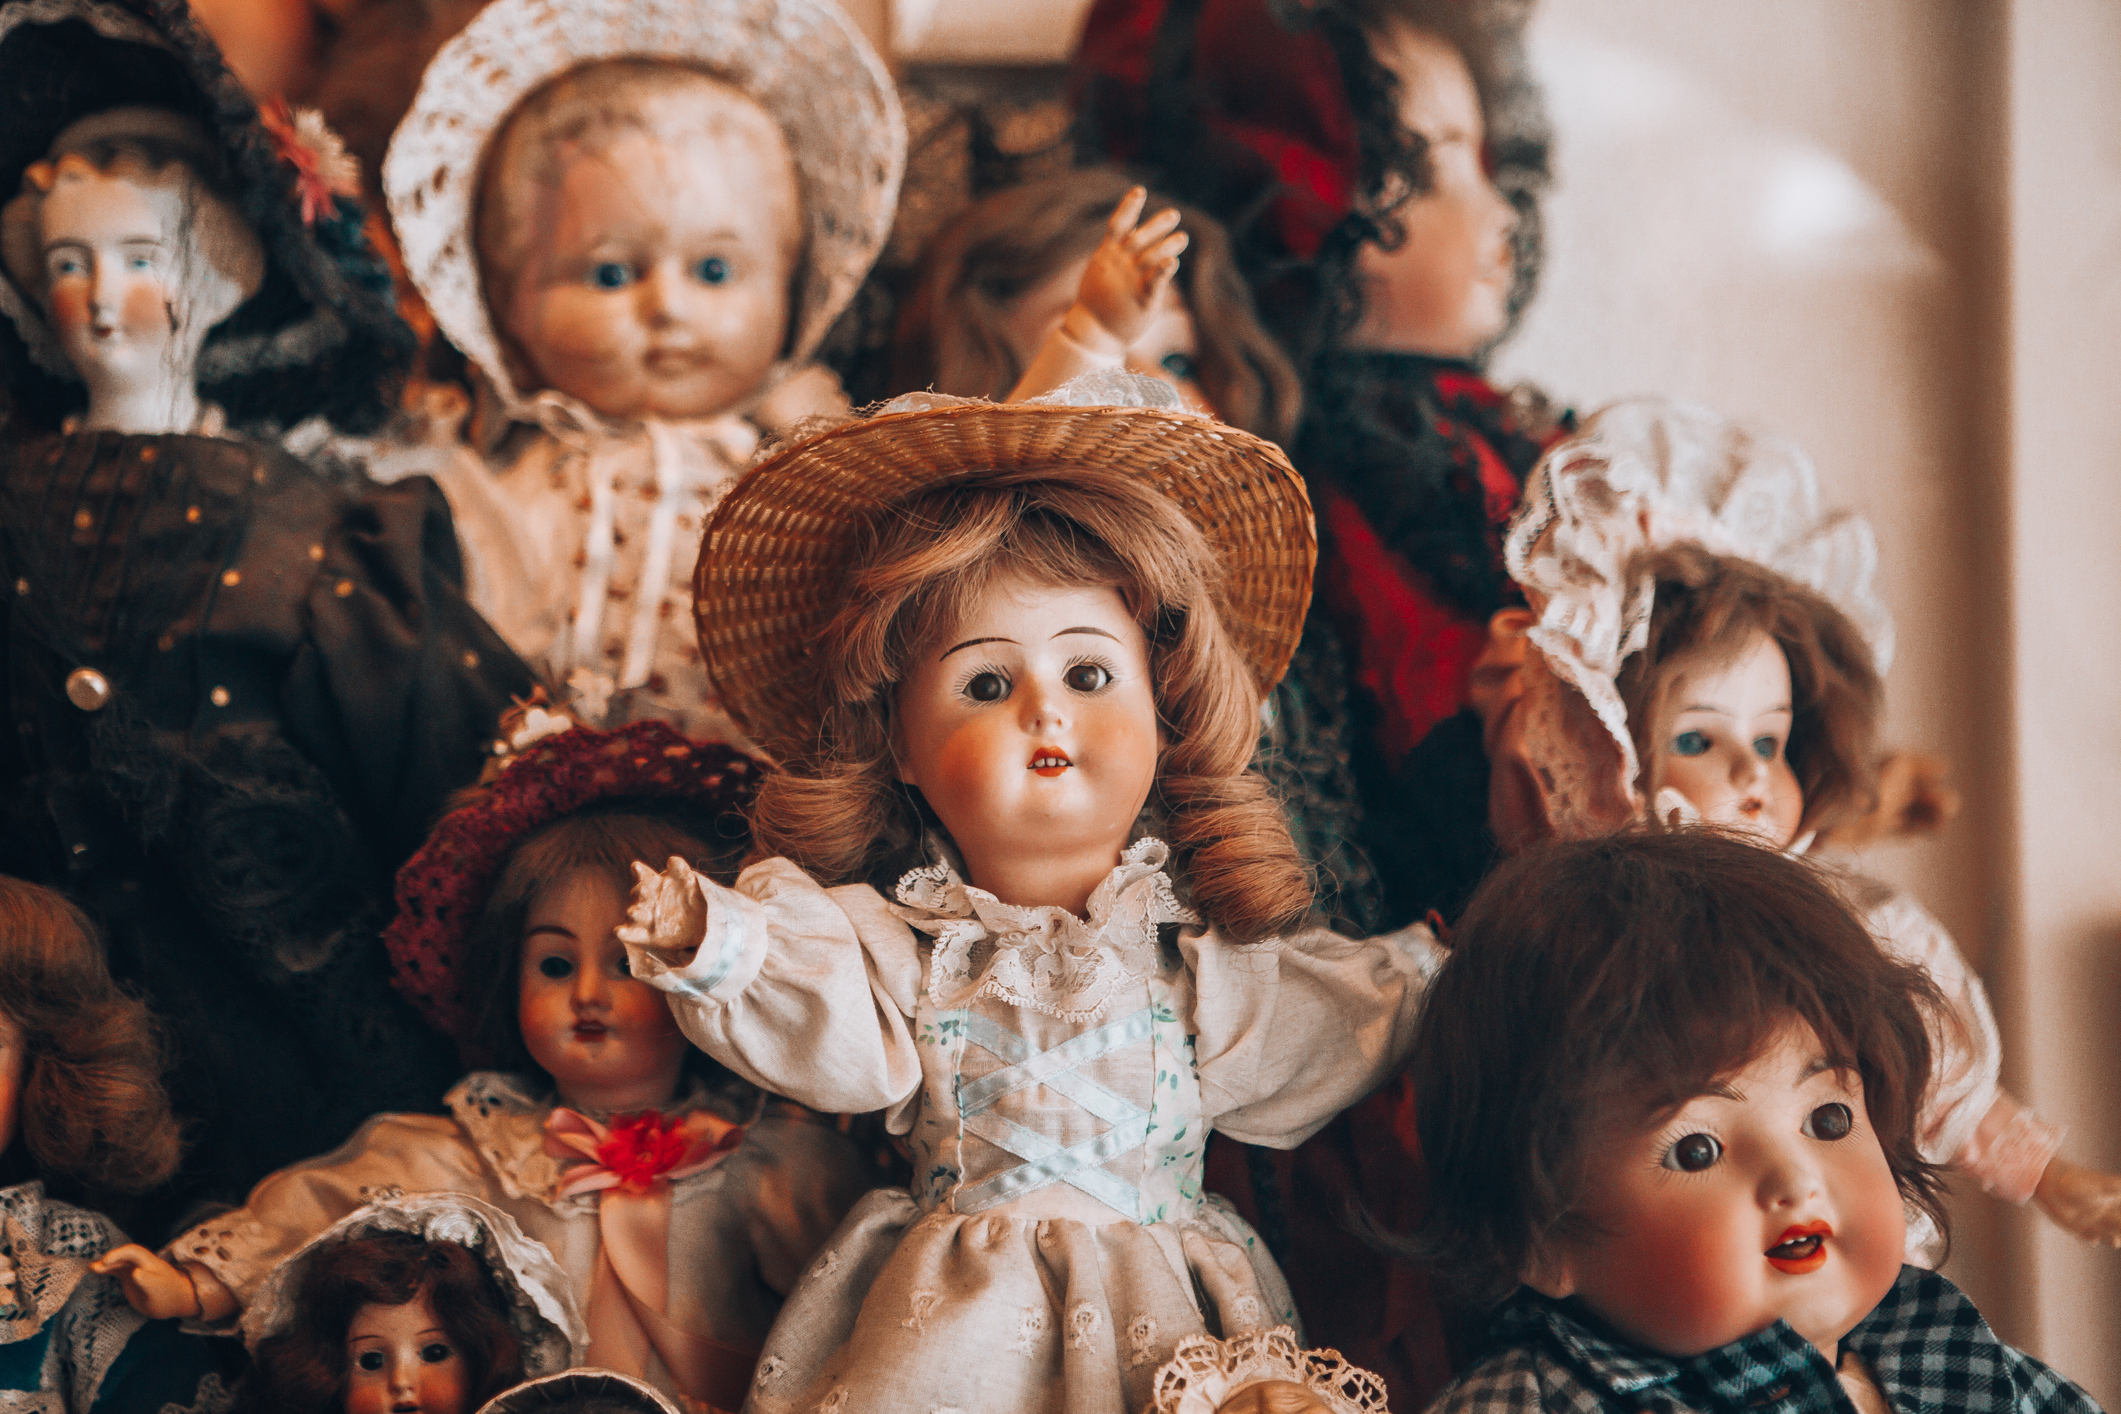 Collection of vintage dolls displayed together